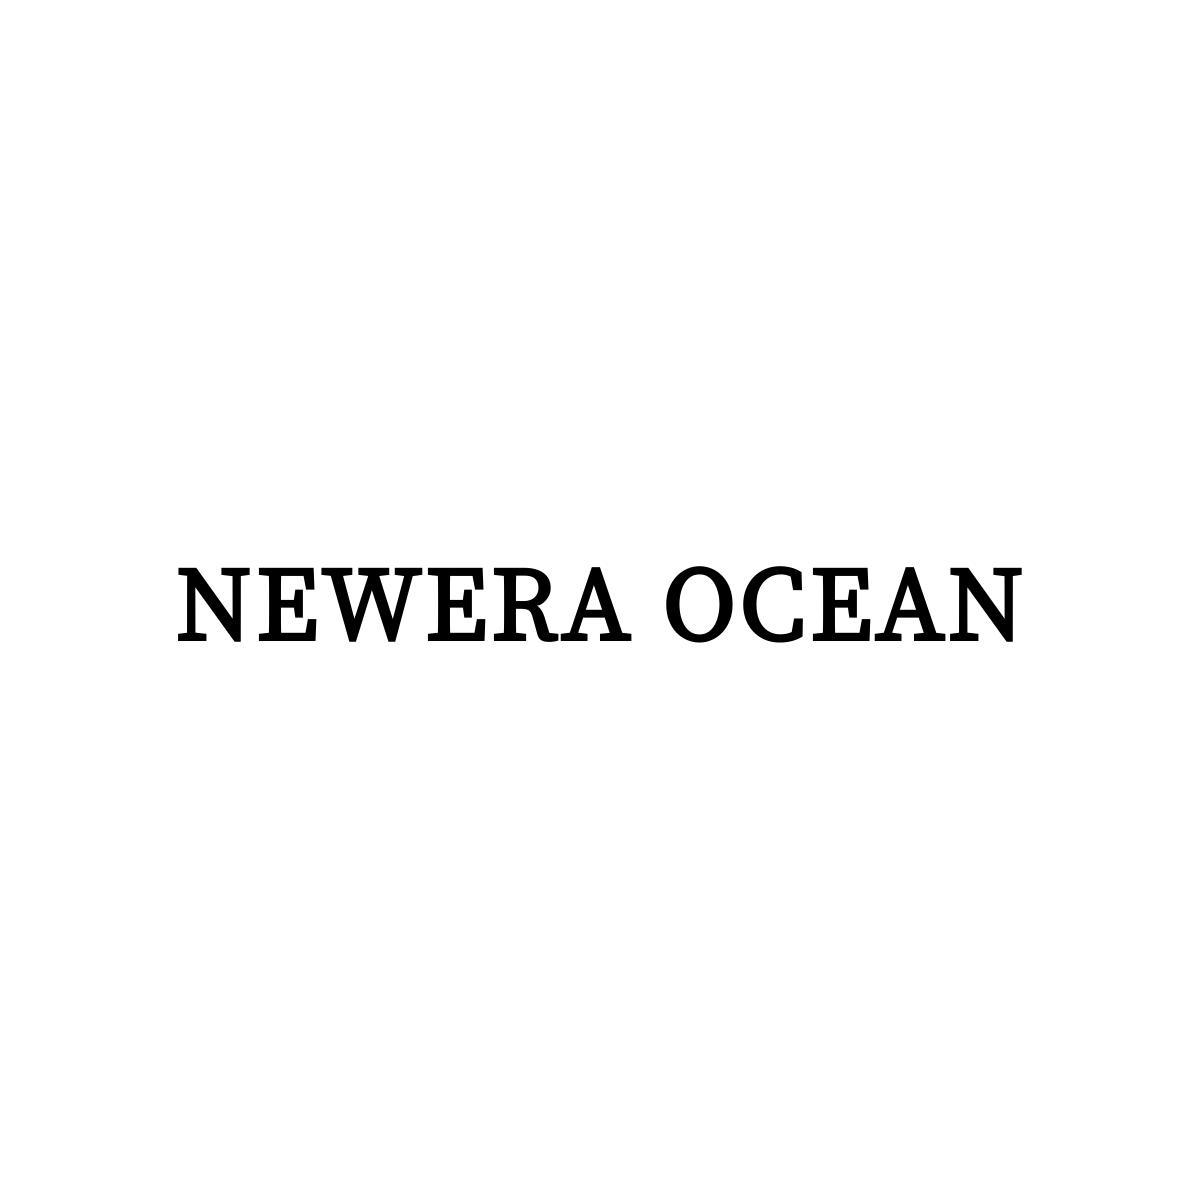 NEWERA OCEAN